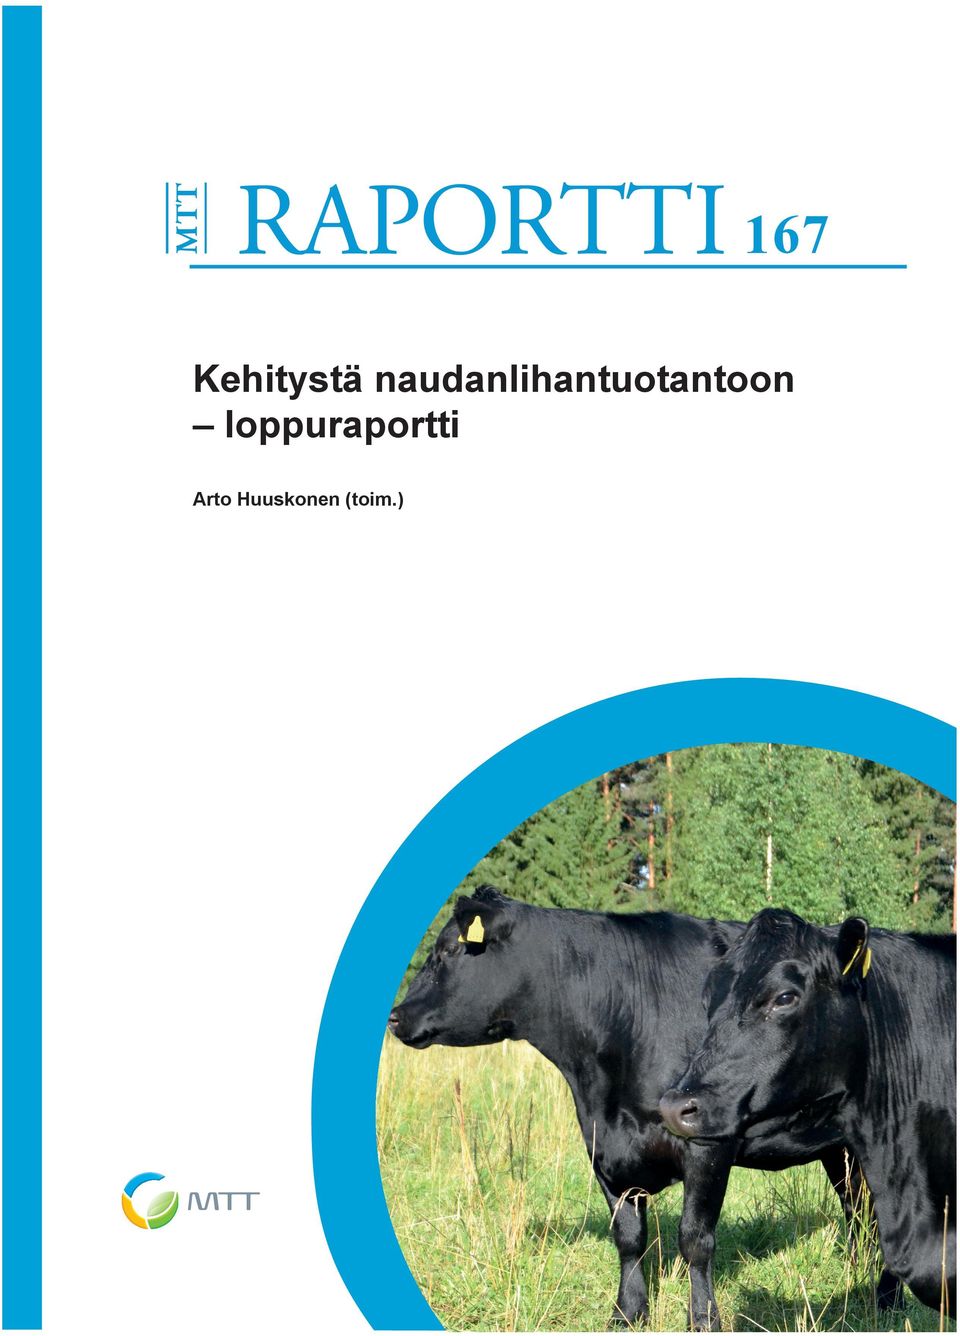 maatalouden ympäristötutkimusta käsitteleviä tutkimusraportteja.